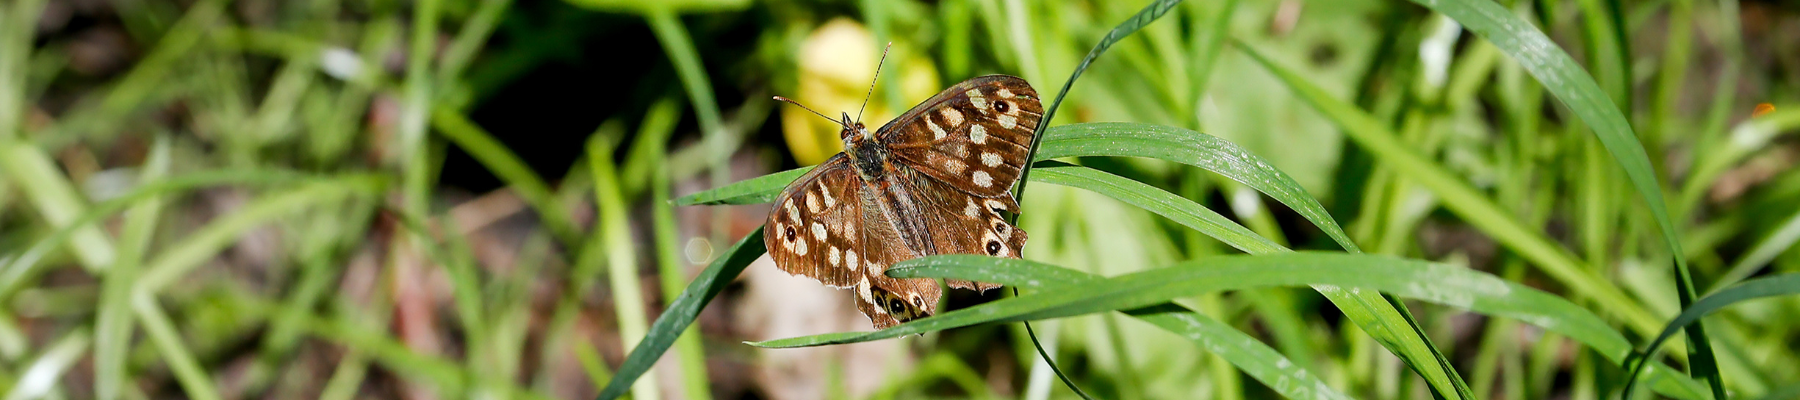 A butterfly in a meadow habitat